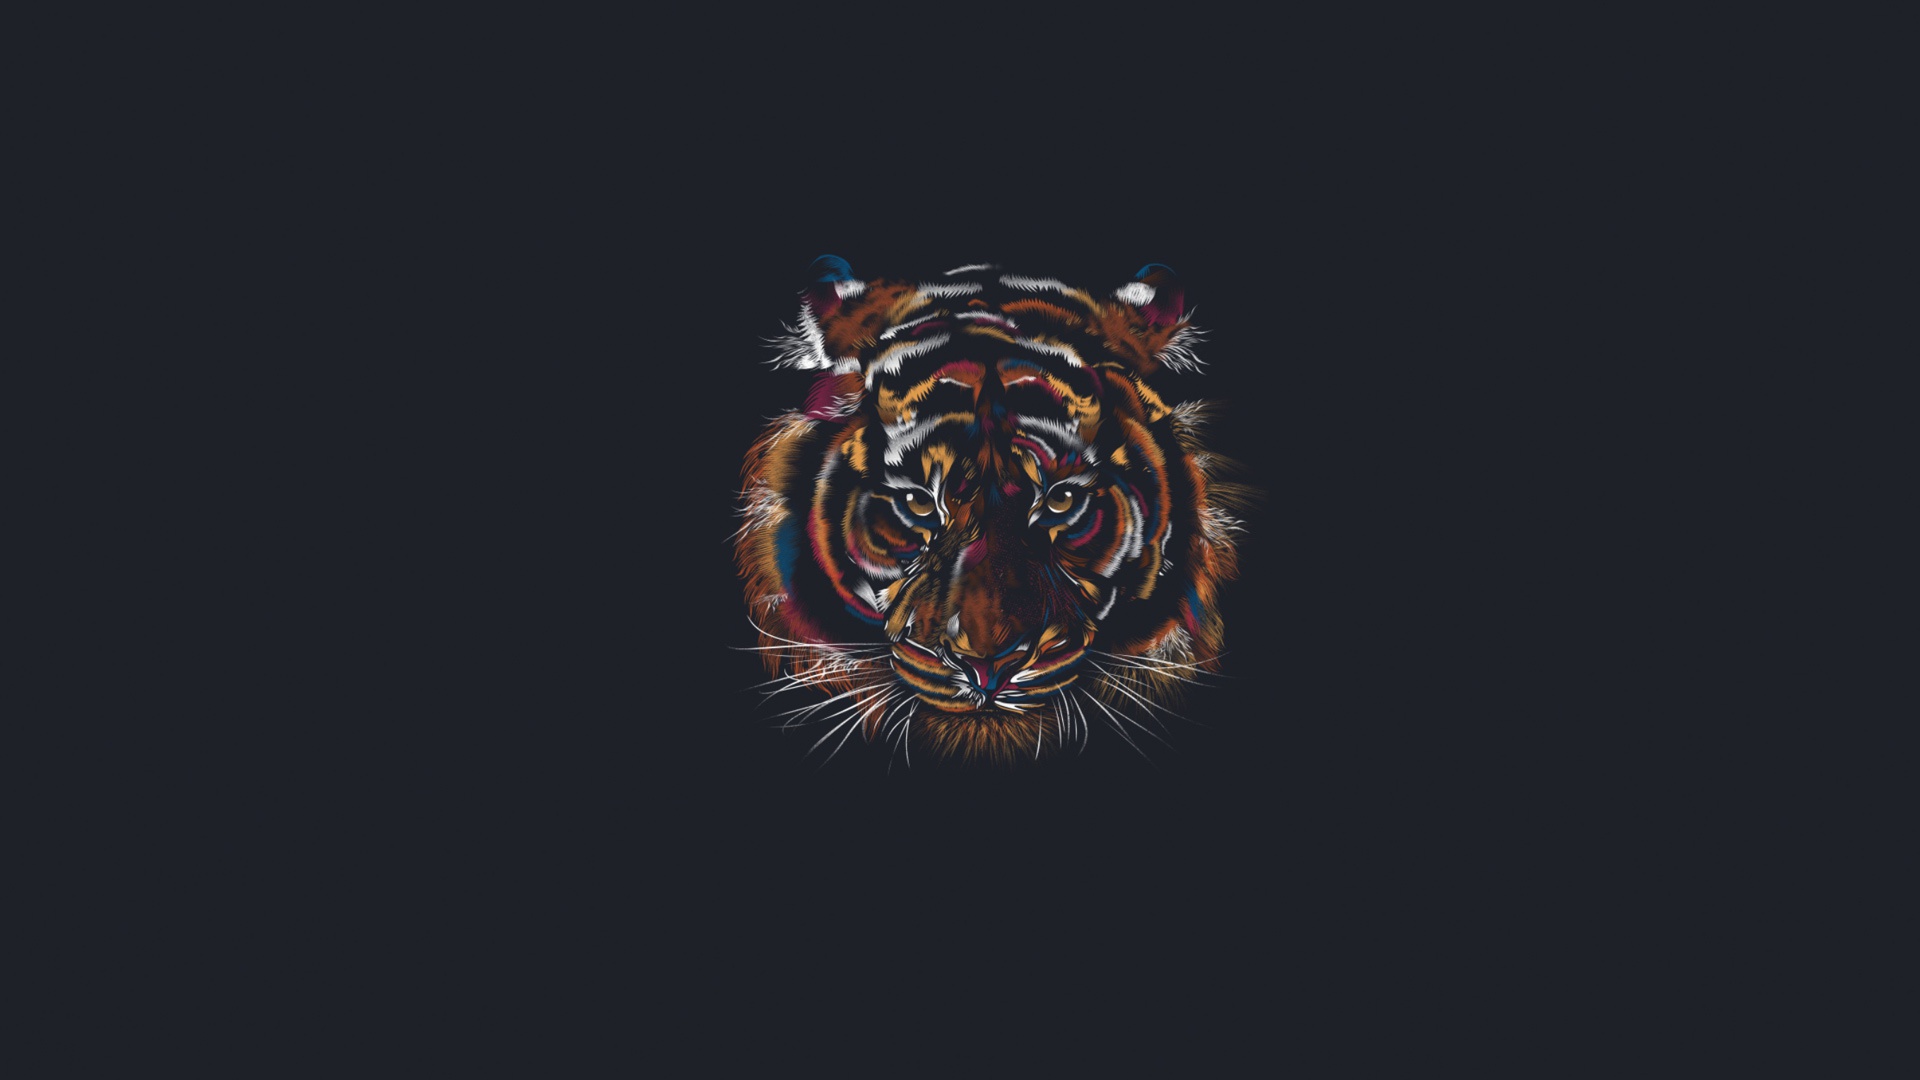 Descarga gratuita de fondo de pantalla para móvil de Animales, Tigre, Artístico, Minimalista.